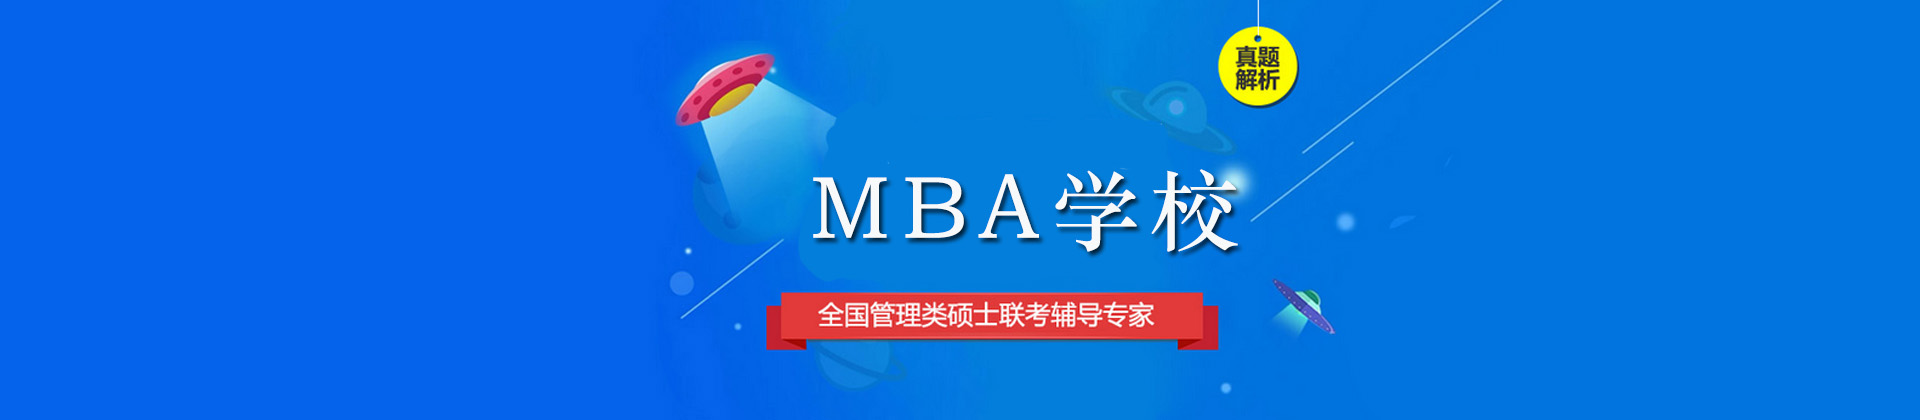 广州MBA学校